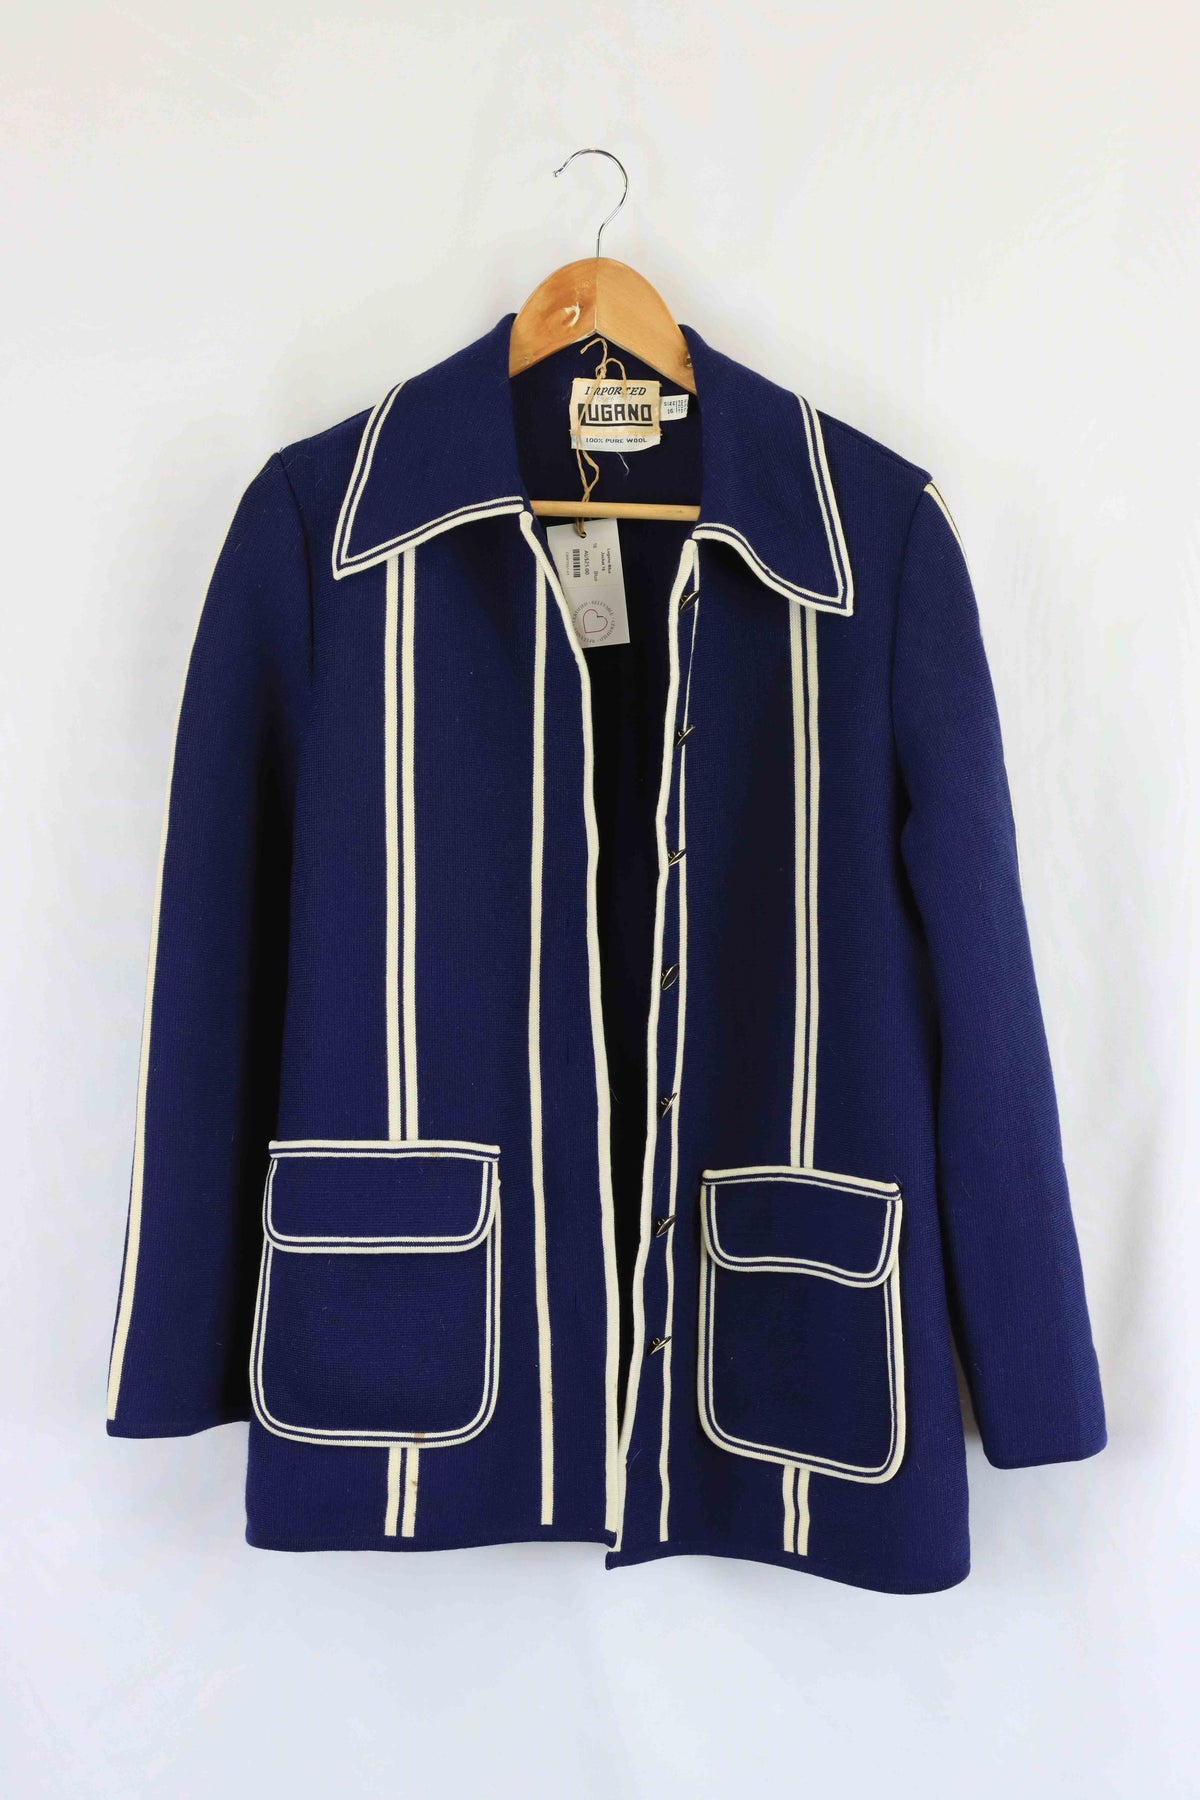 Lugano Vintage Blue Wool Jacket 16